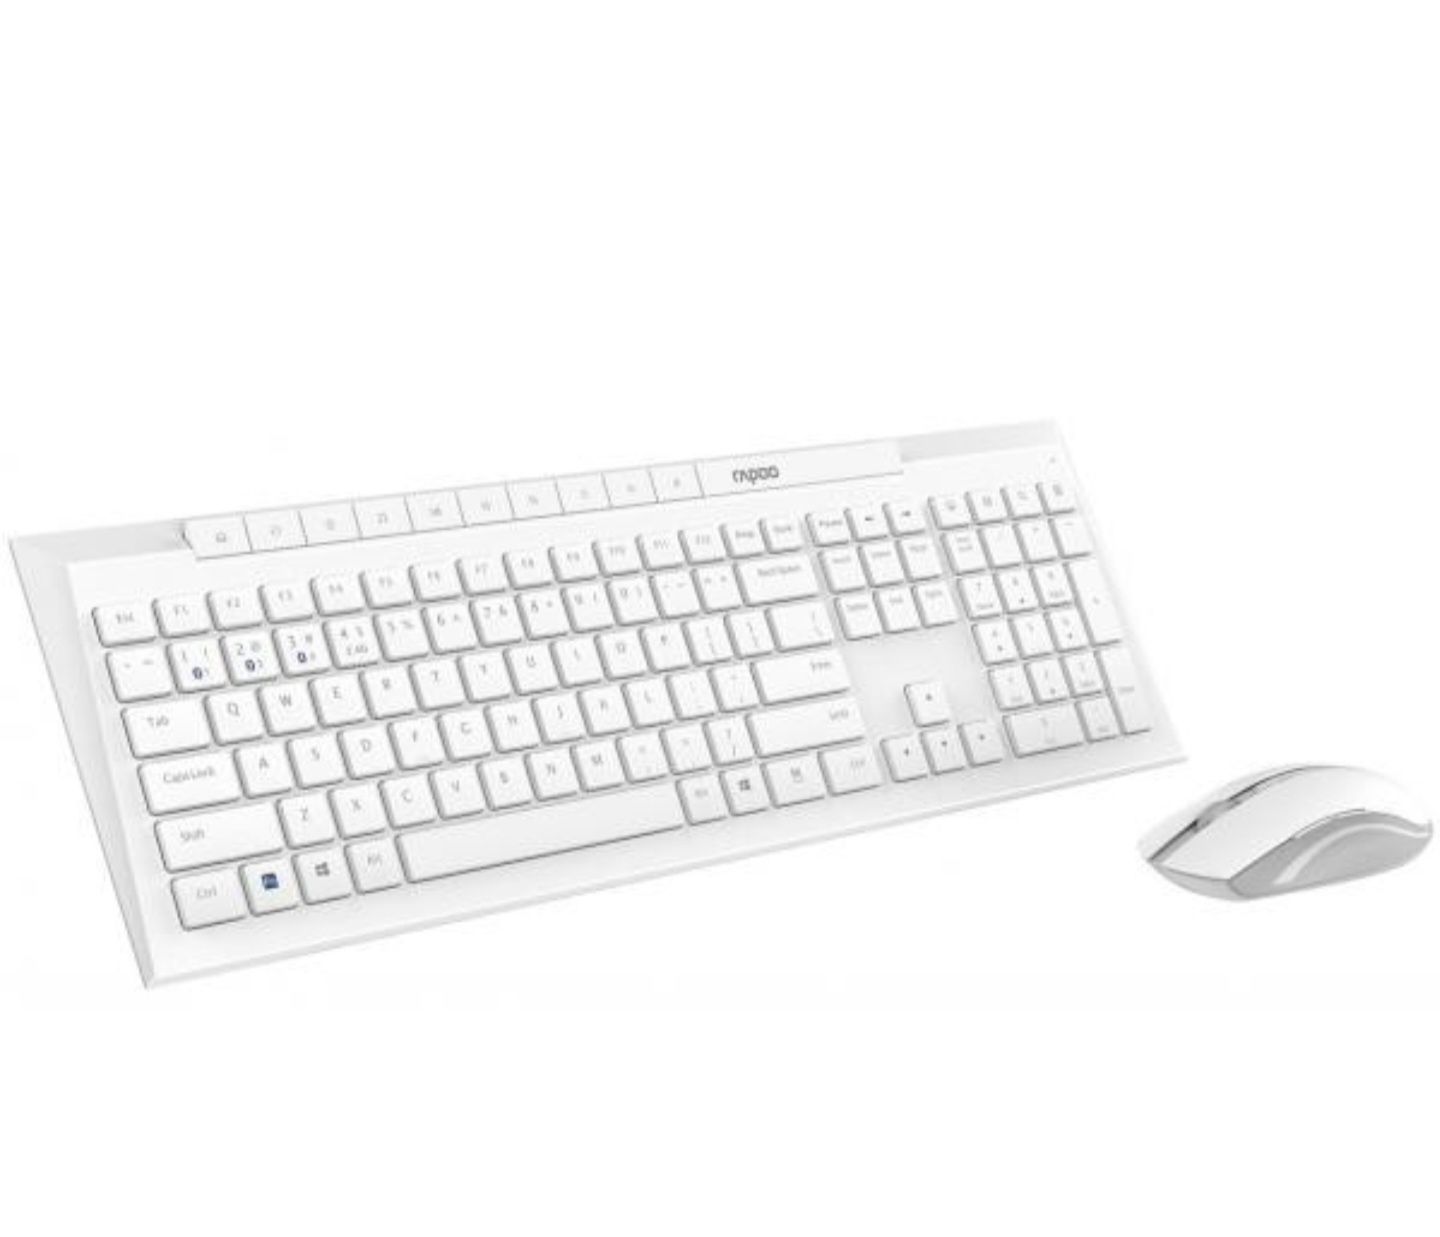 Клавиатура и мышь Rapoo 8210M Black,White